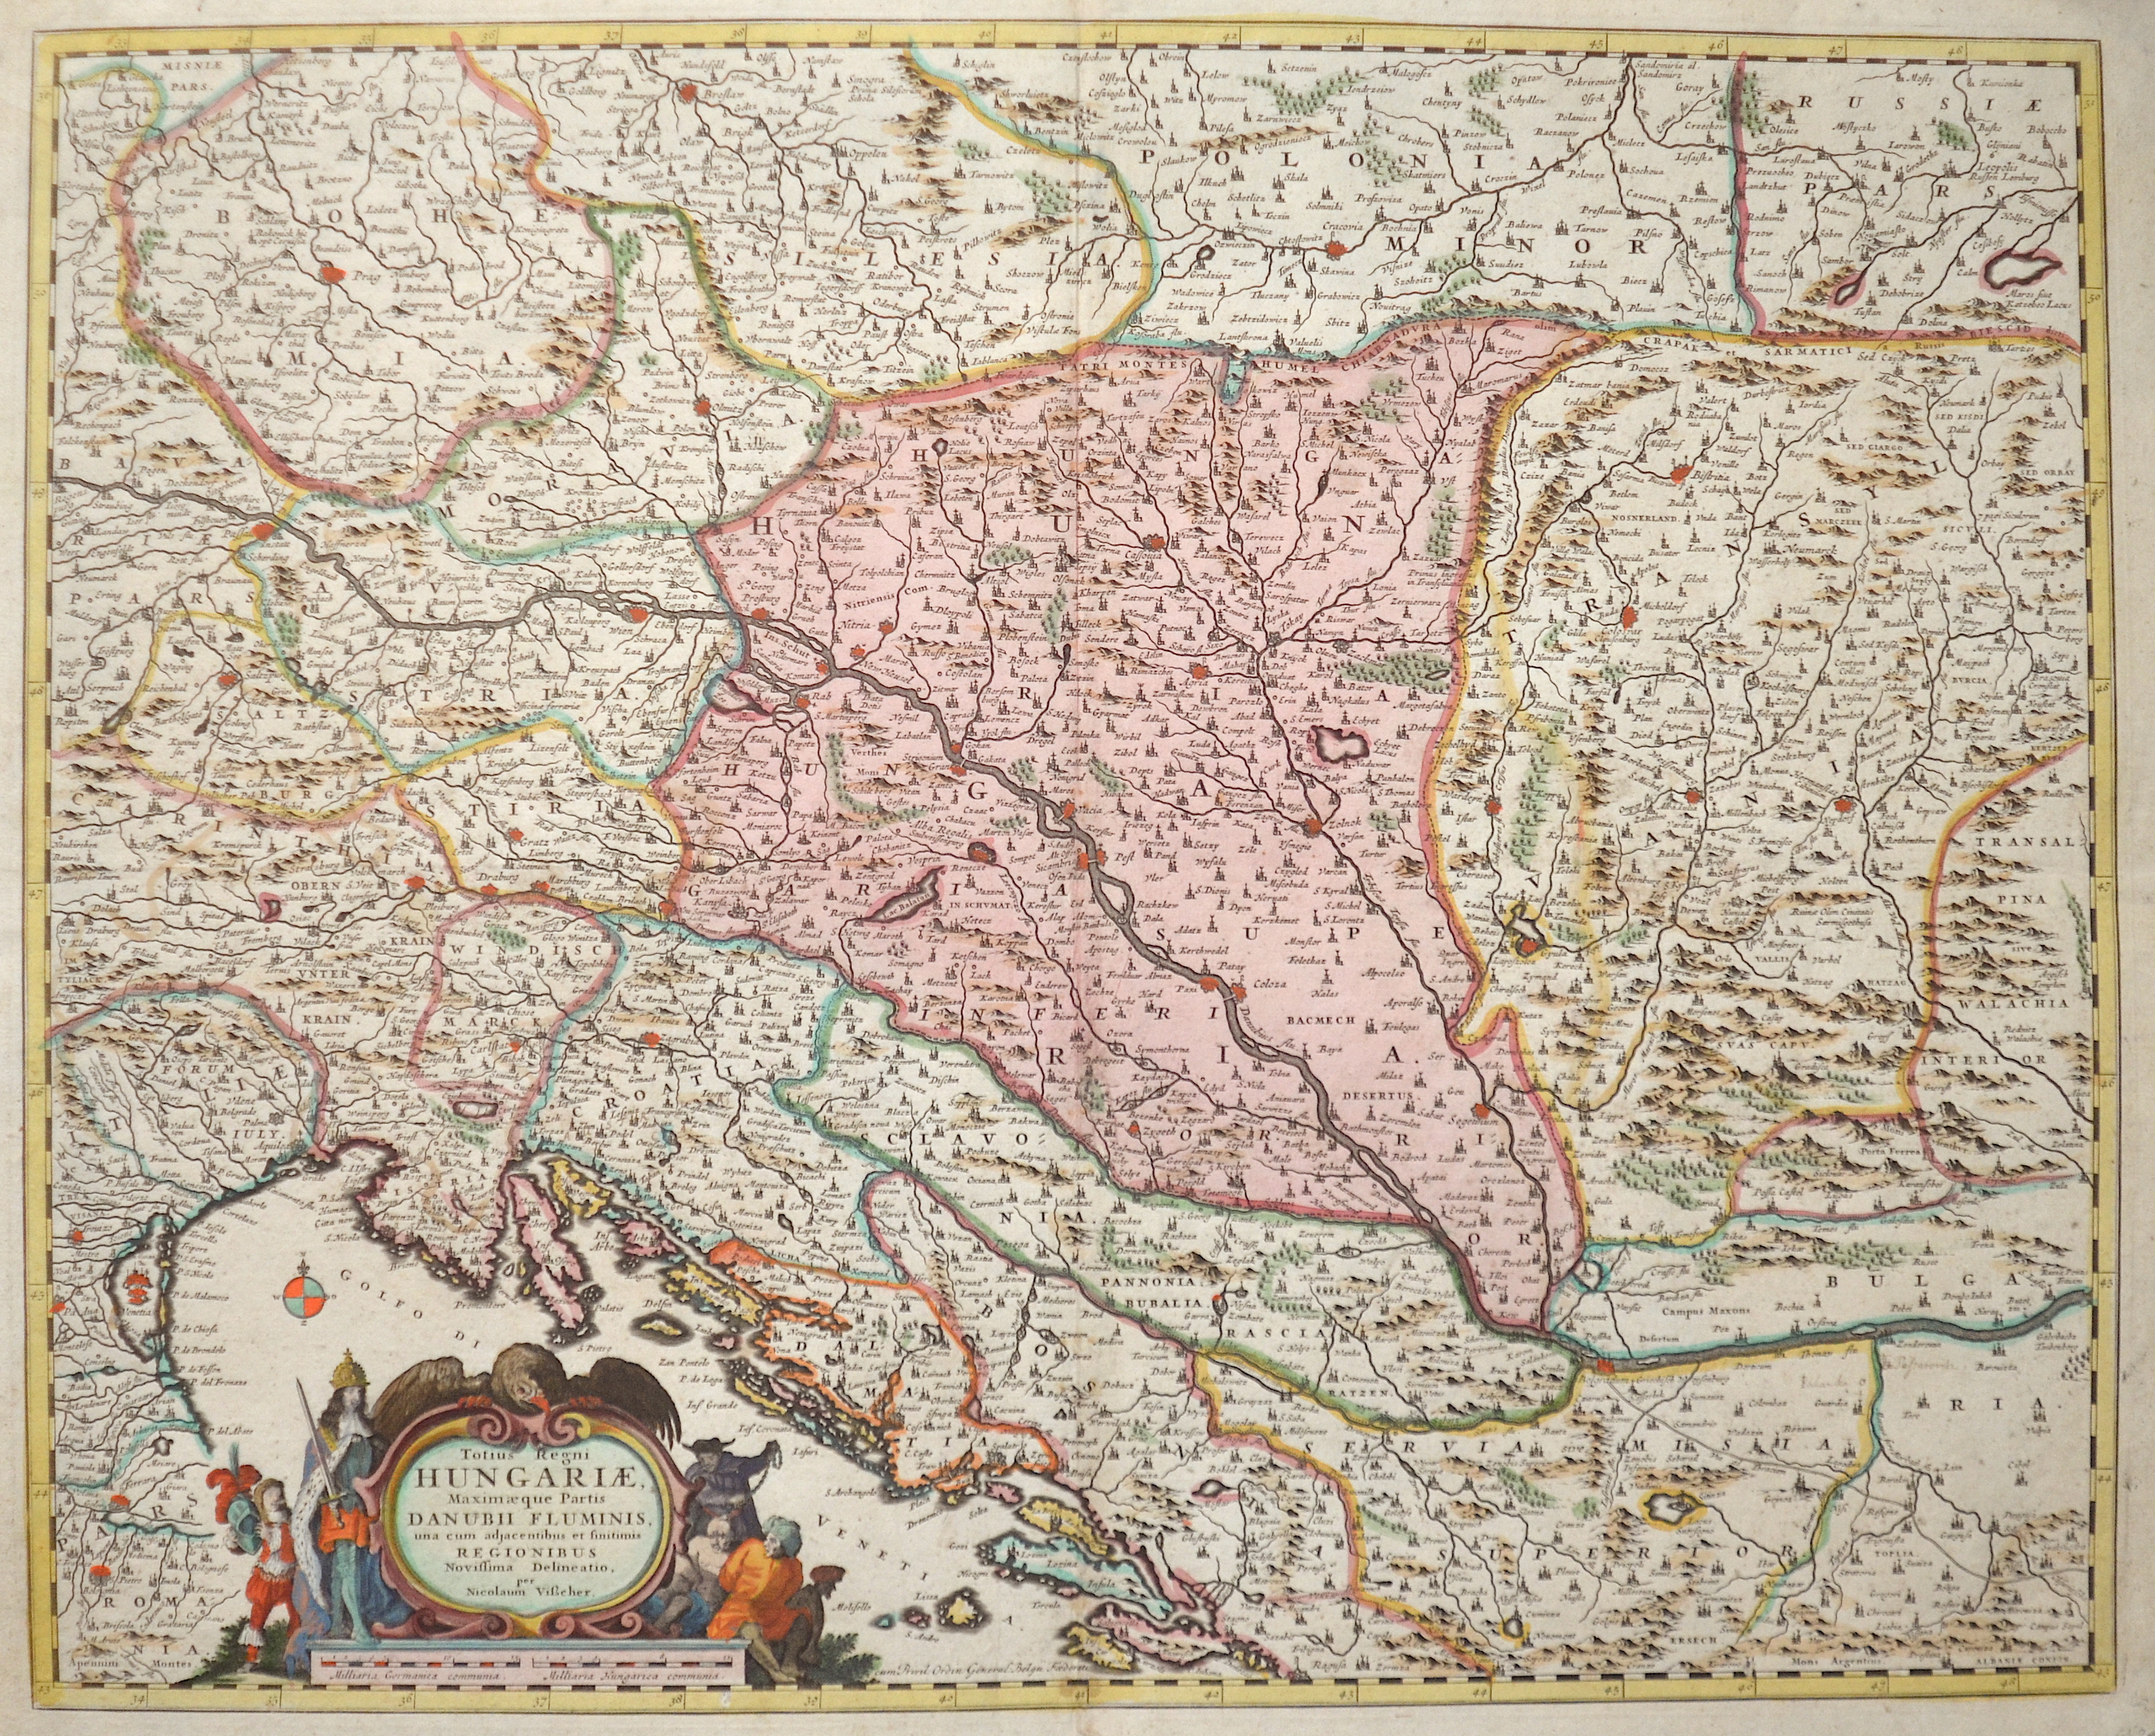 Visscher Nicolas Totius Regni Hungariae, Maximaeque Partis Danubii Fluminis, una cum adjacentibus et finitimis Regionibus